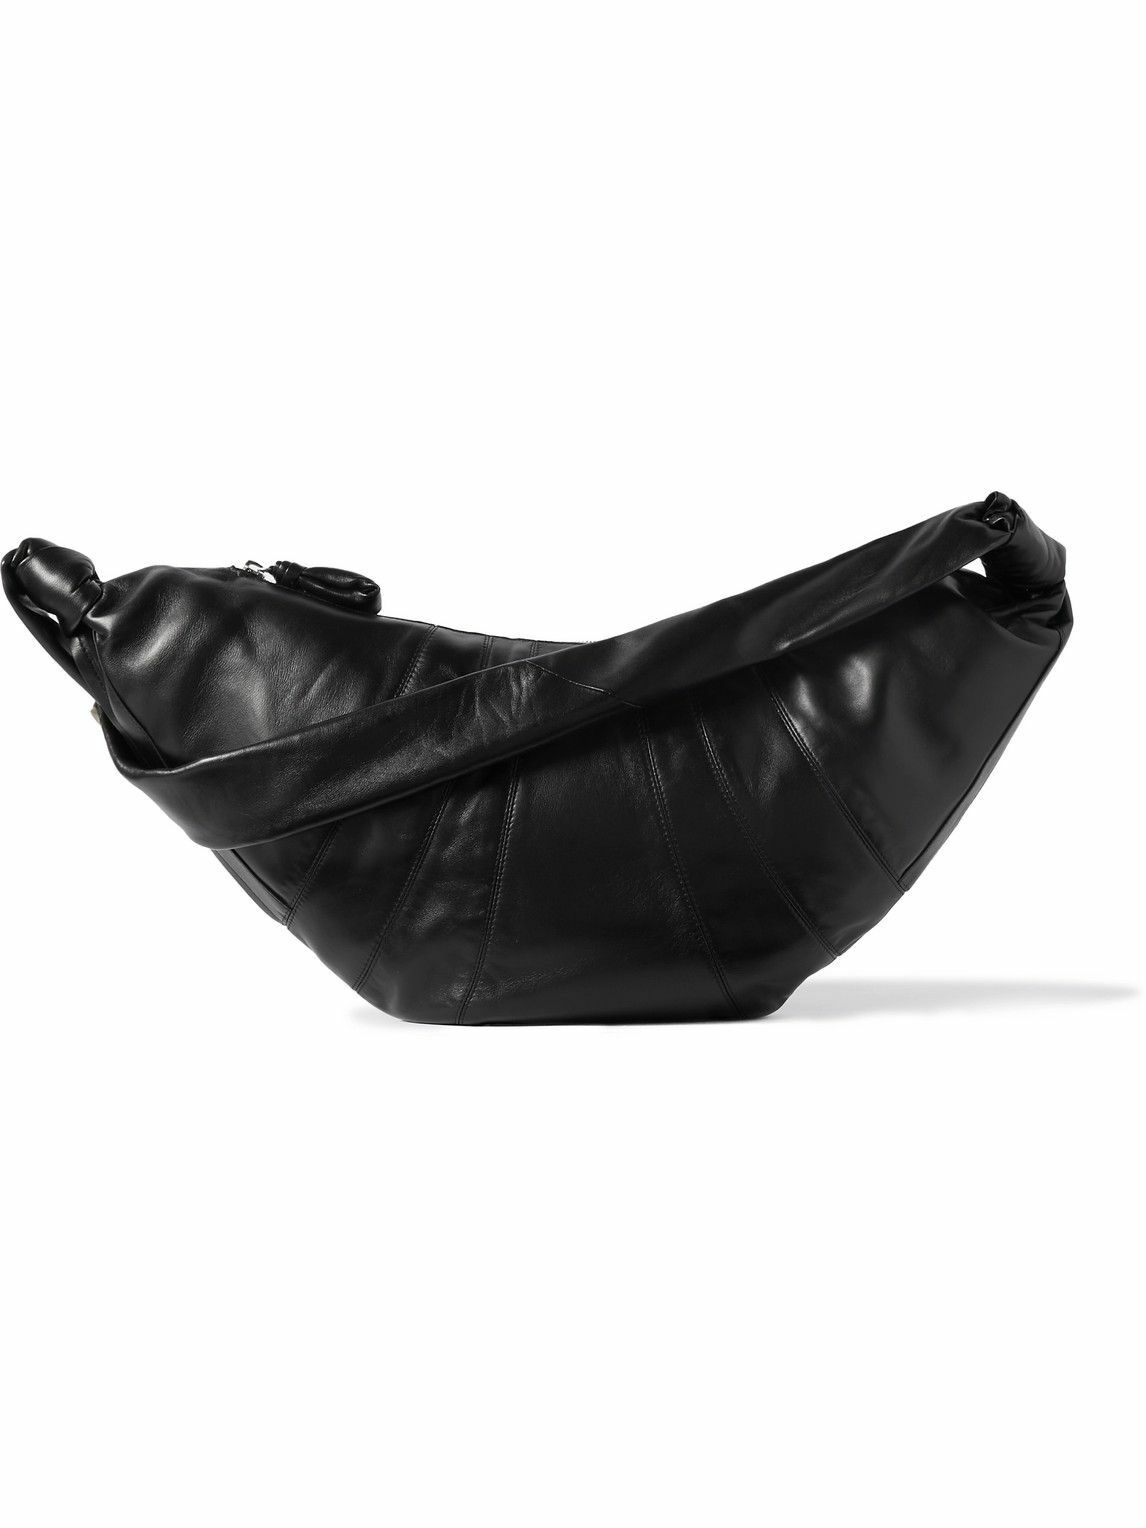 Lemaire - Croissant Large Leather Messenger Bag Lemaire